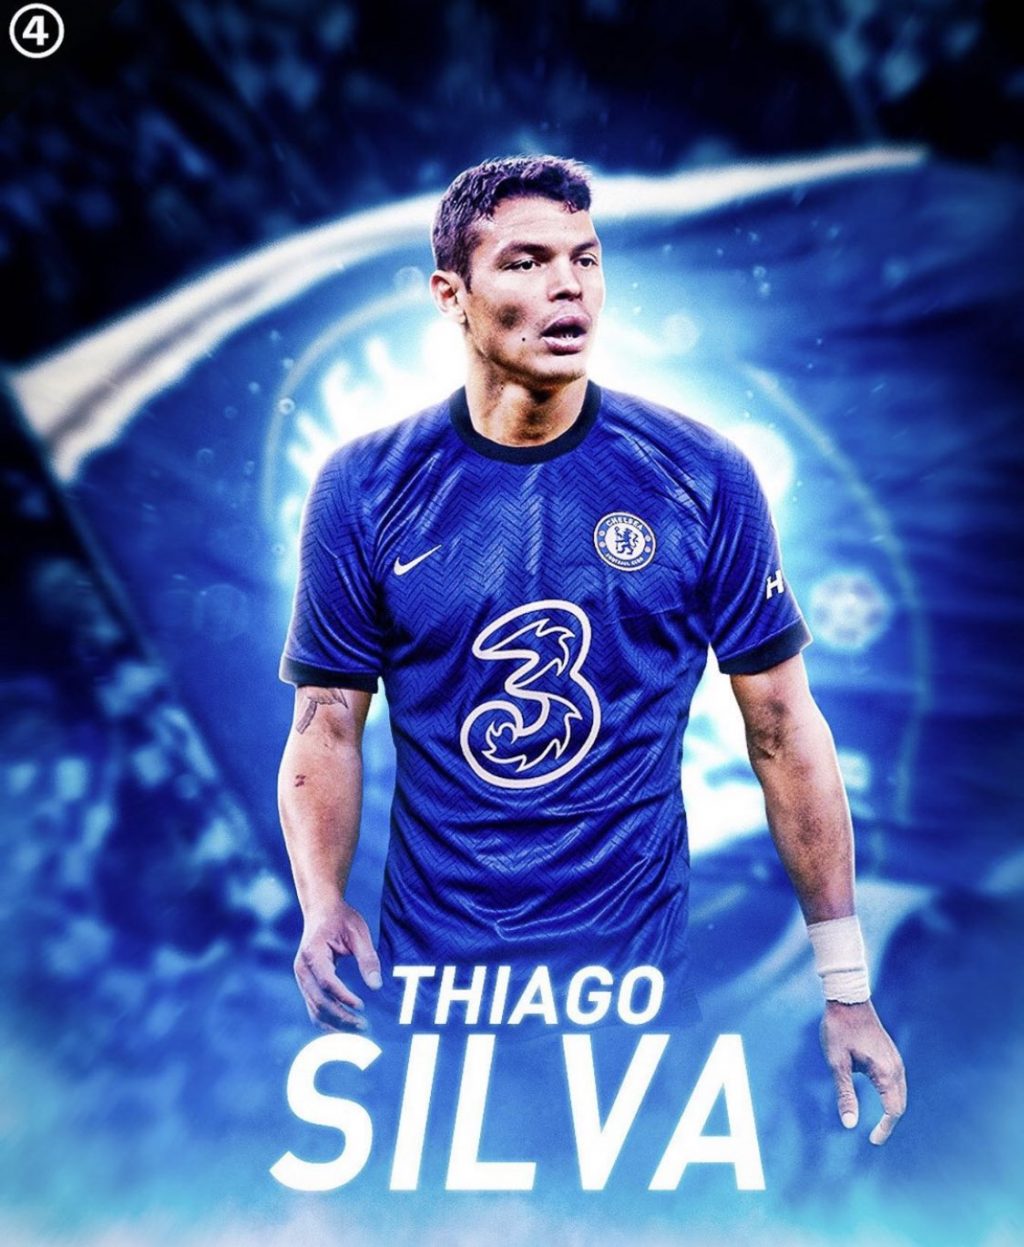 Tinggalkan PSG, Thiago Silva Merapat ke Chelsea